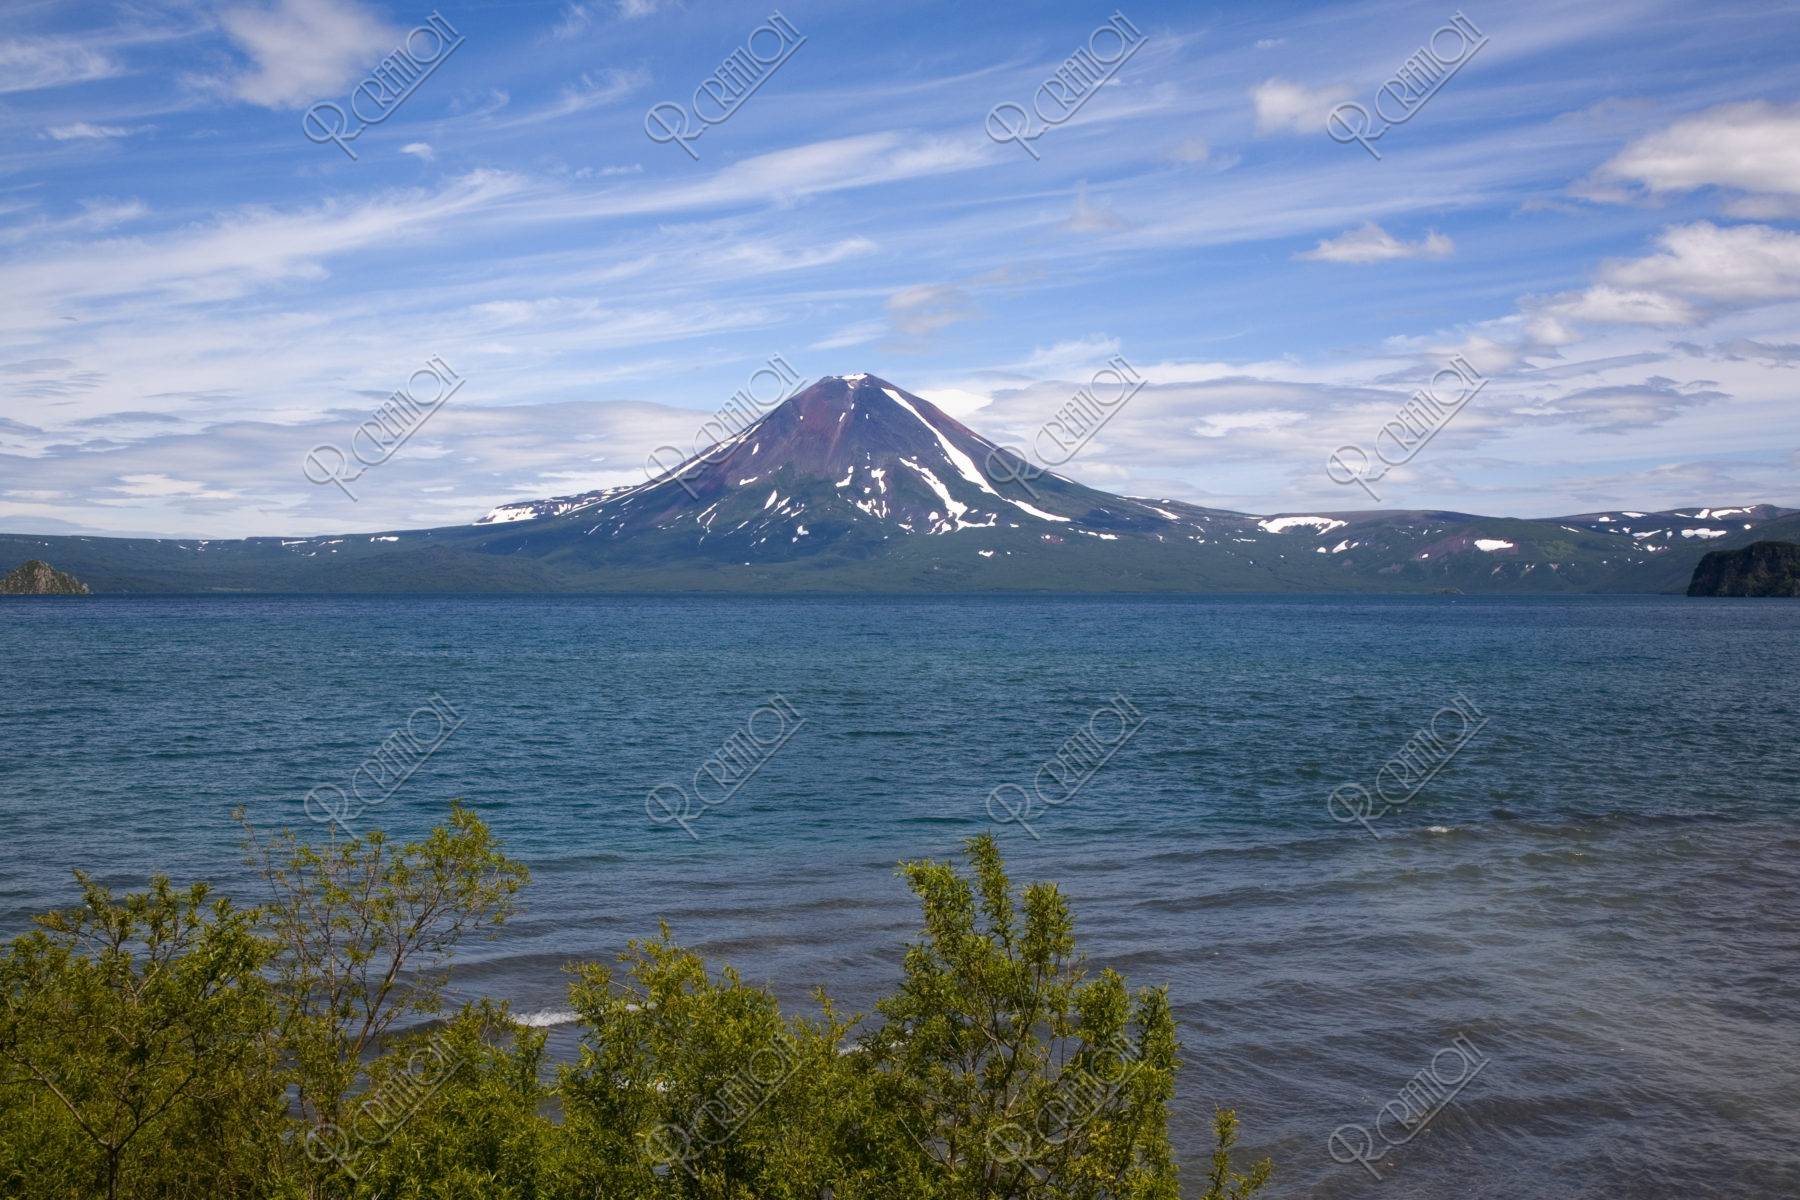 クリル湖とイリンスキー火山